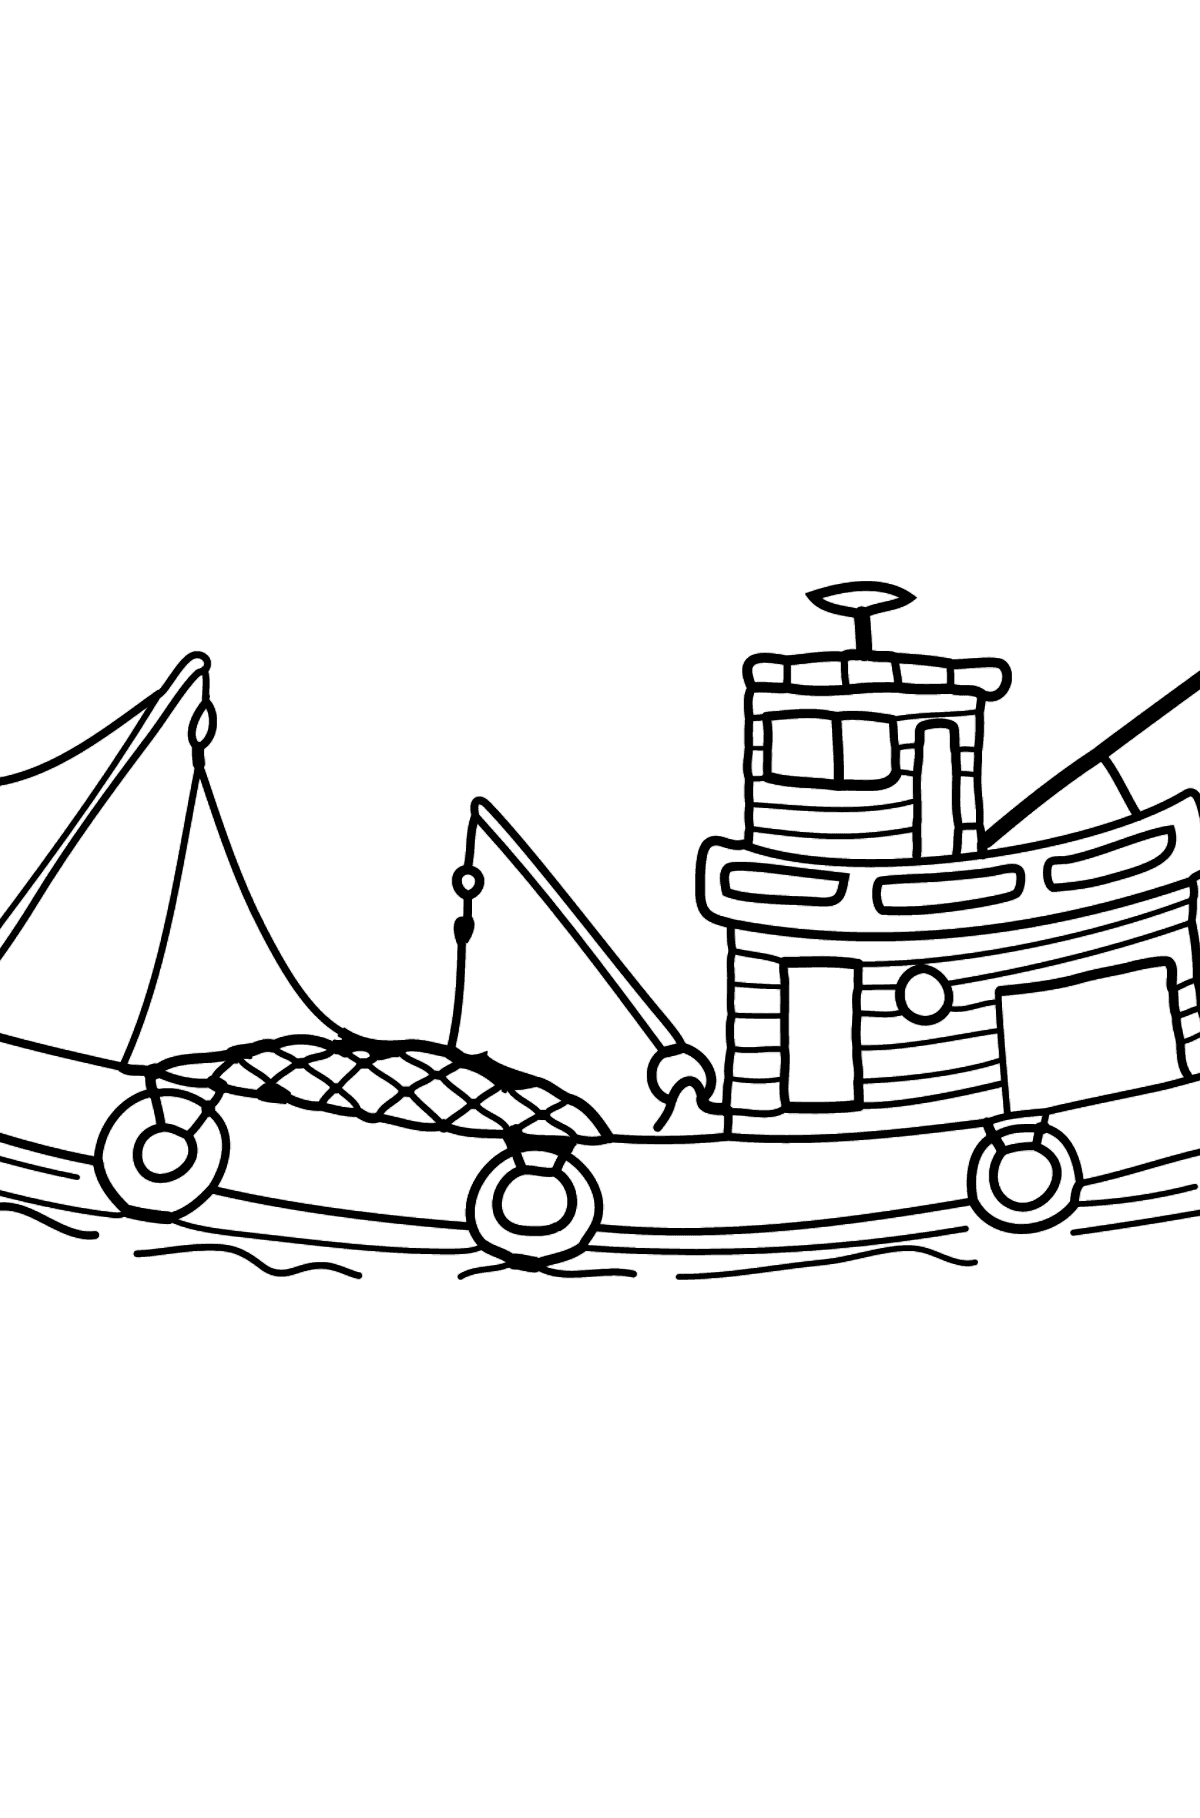 Ausmalbild - Ein Fischerboot - Malvorlagen für Kinder